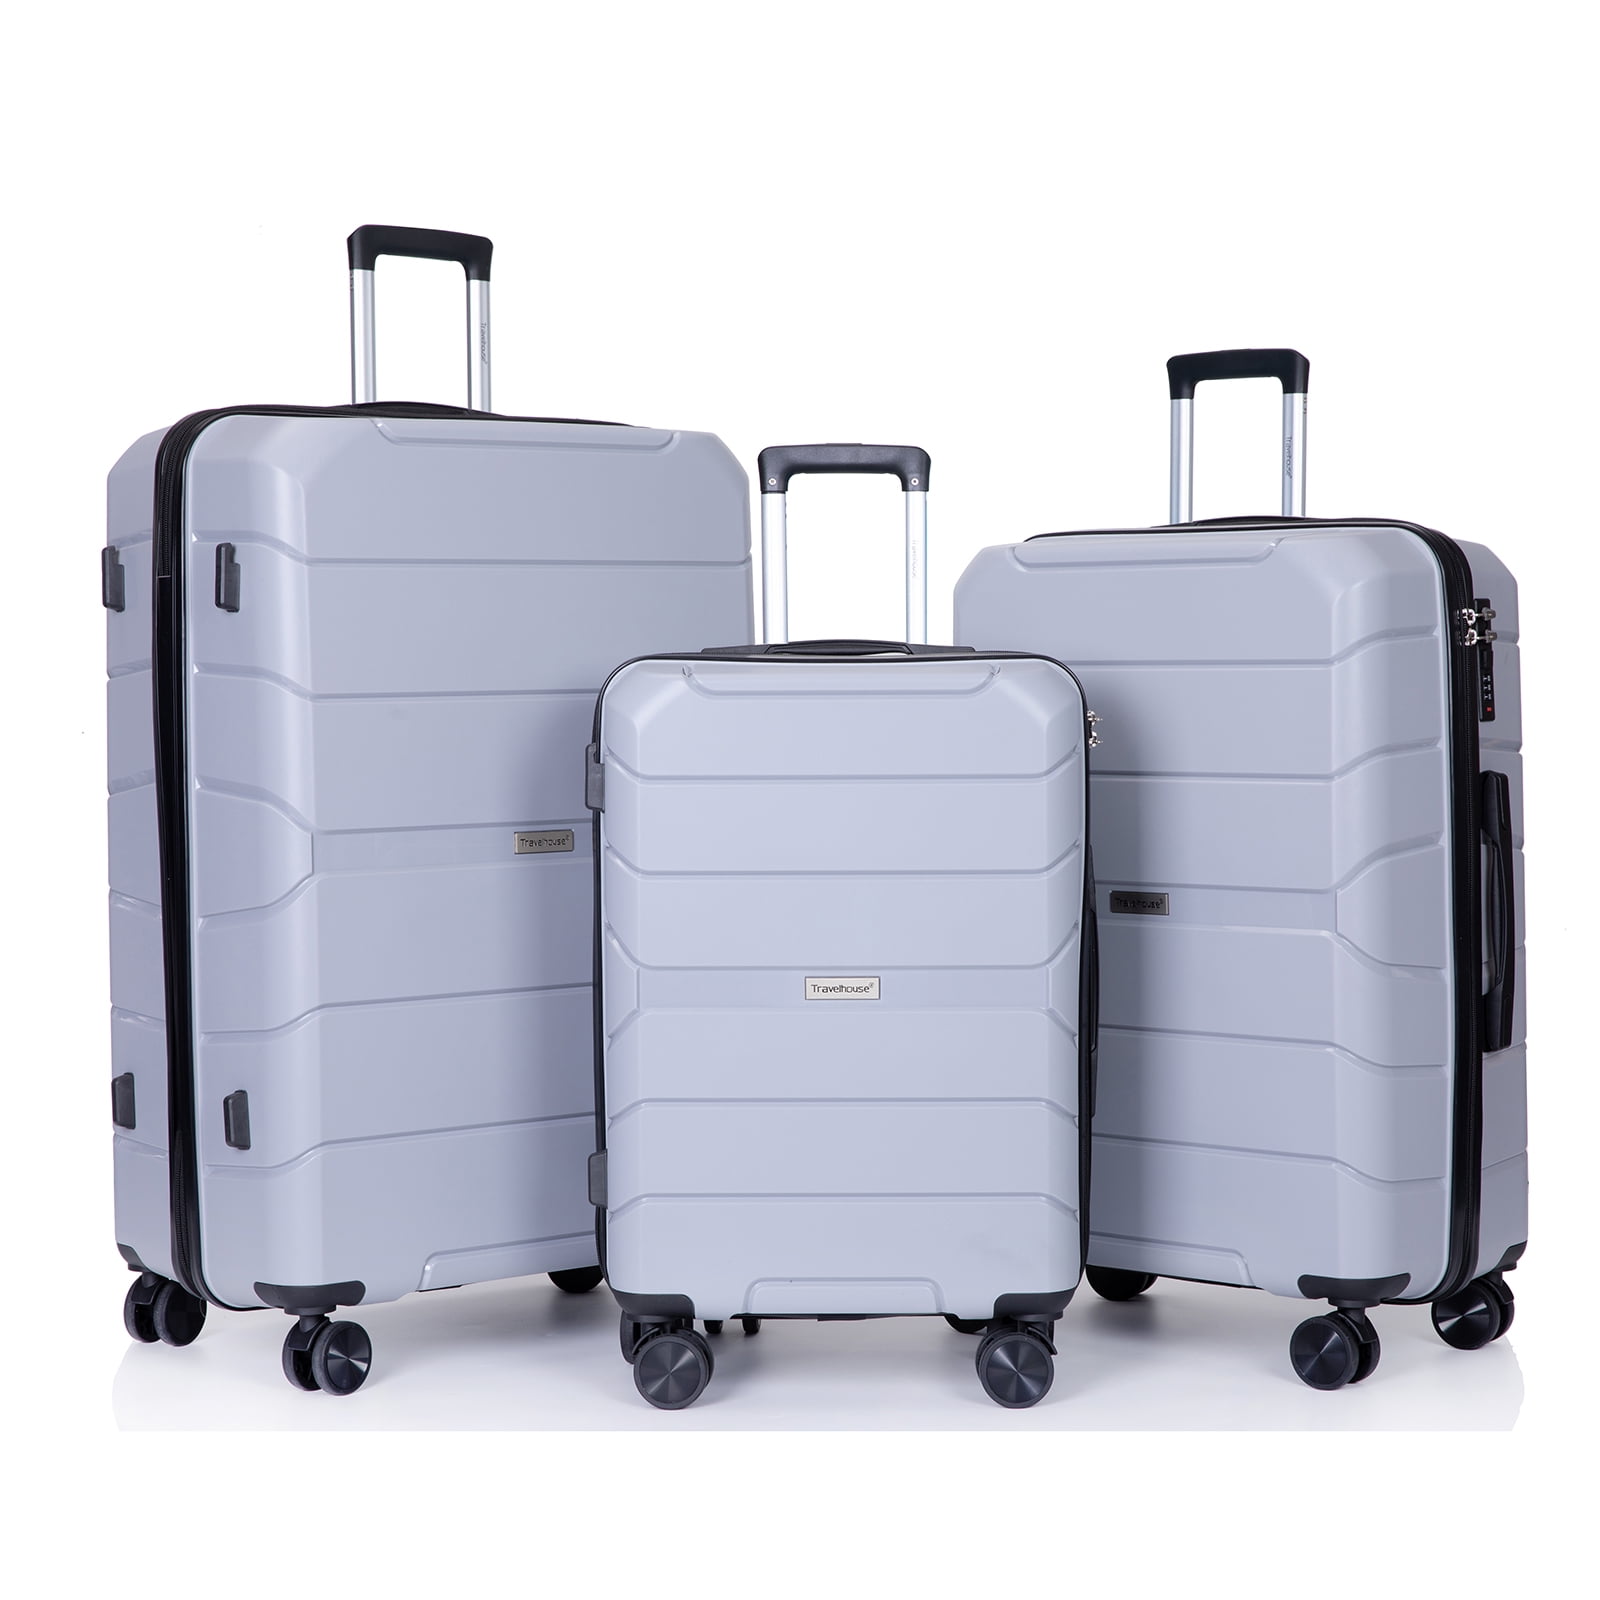 Tripcomp Hardshell Luggage Set,Carry-on,Lightweight Suitcase Set of ...